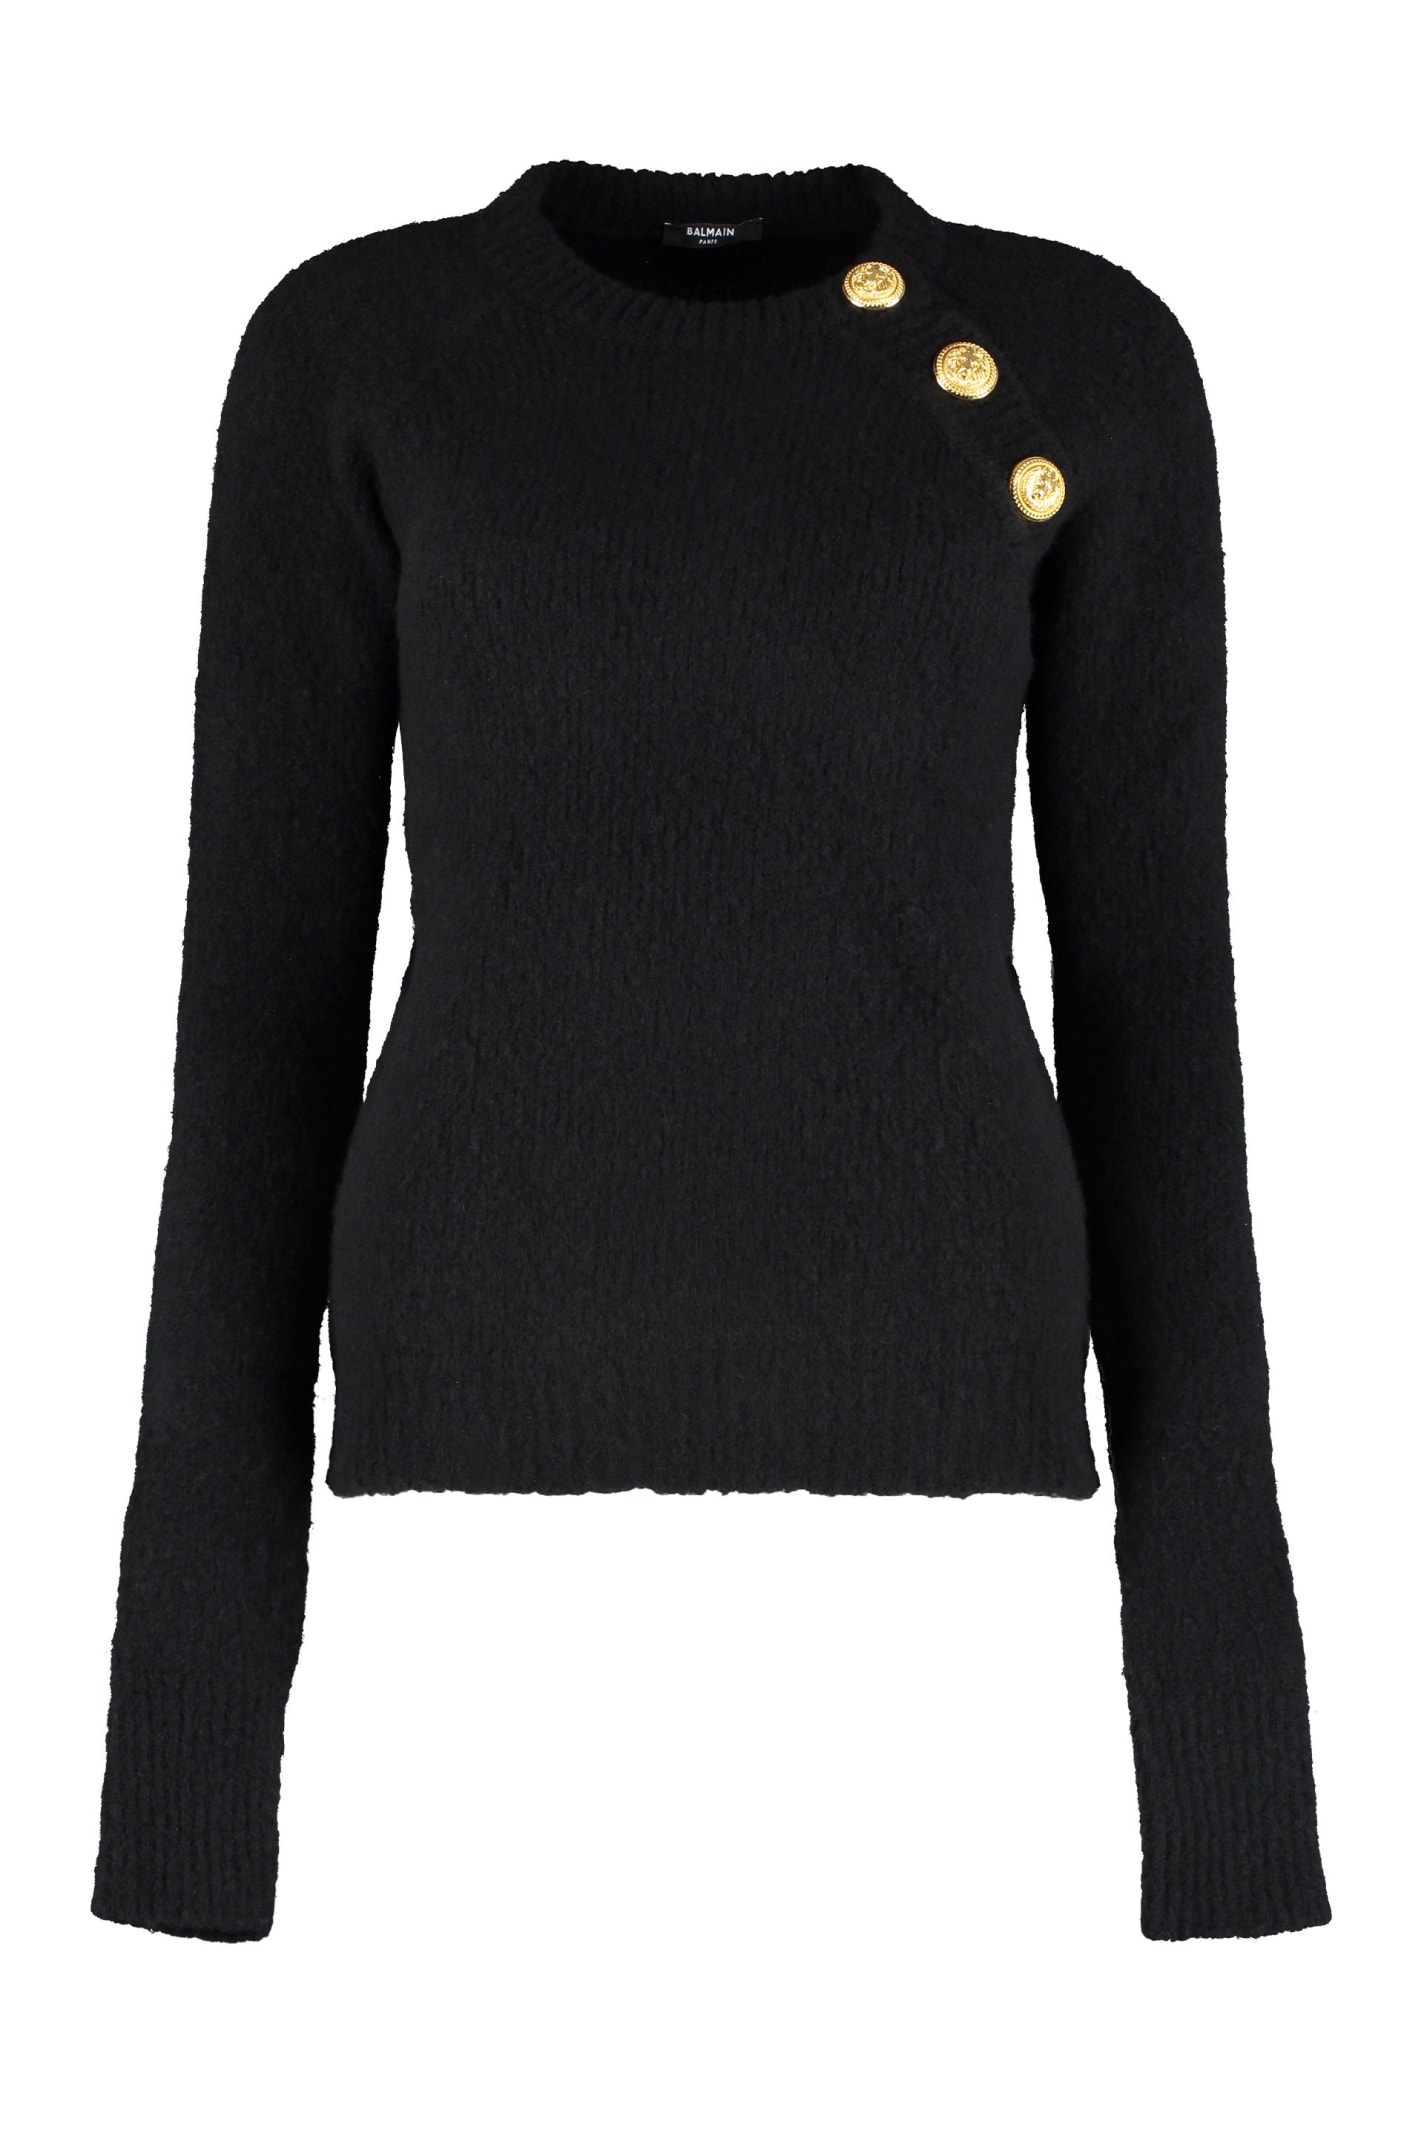 Balmain Wool-cashmere Blend Crew-neck Sweater